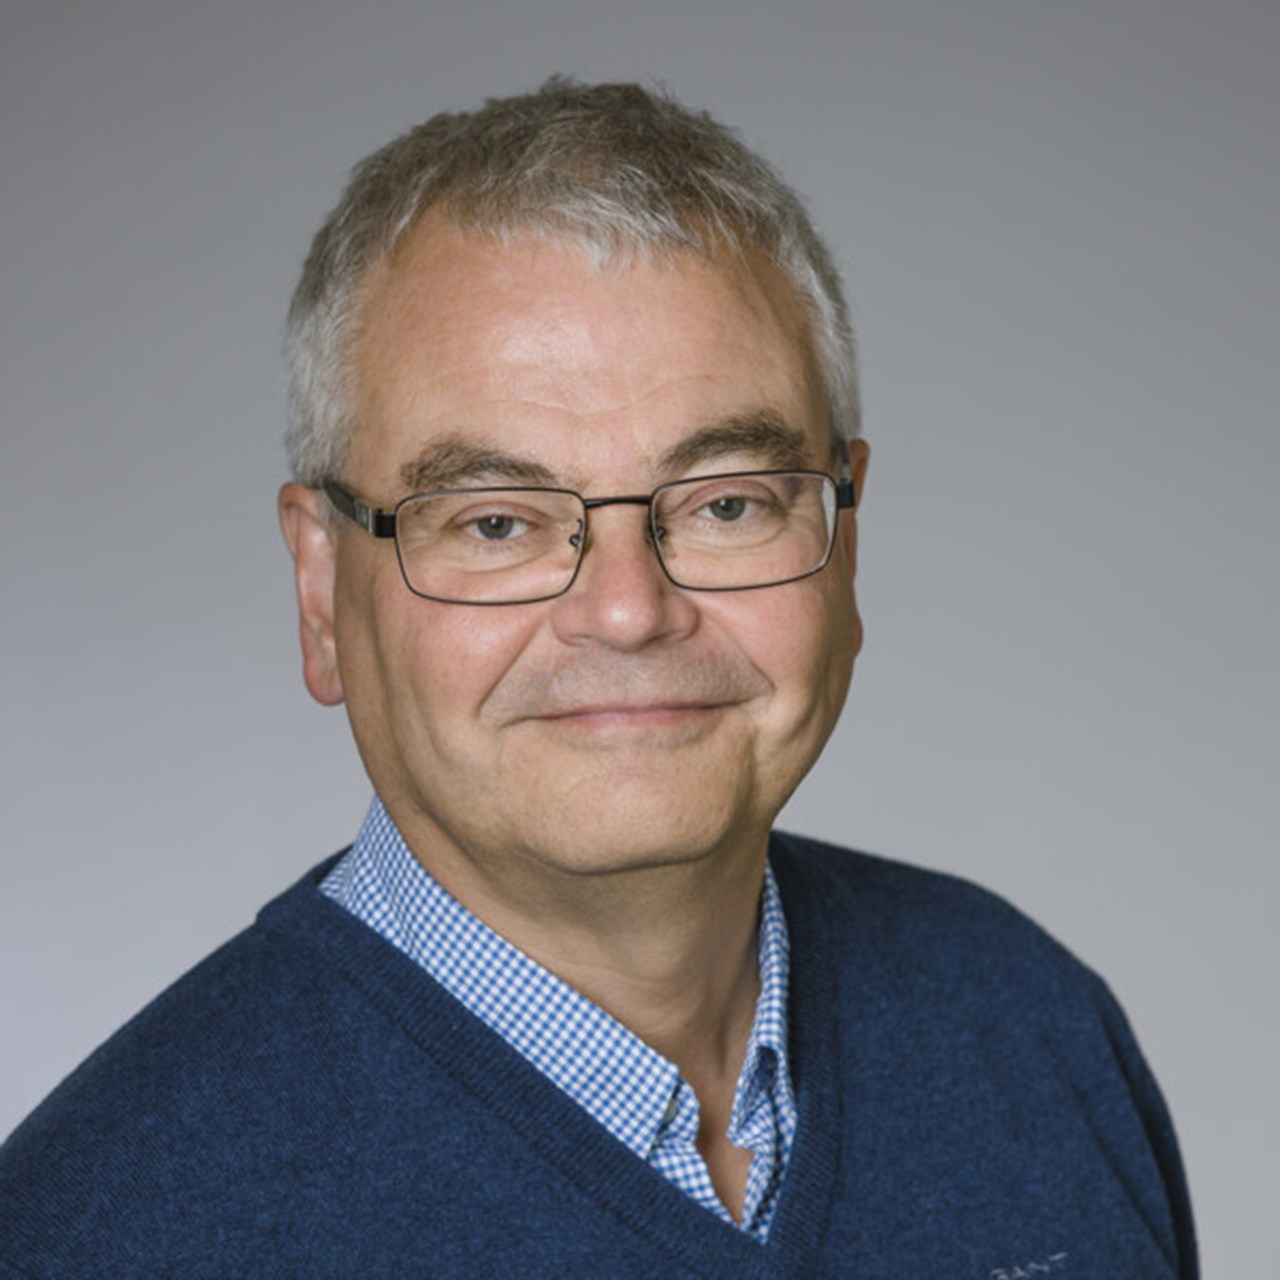 Porträtt av Stefan Söderberg, professor i internmedicin, Institutionen för folkhälsa och klinisk medicin, Umeå universitet.